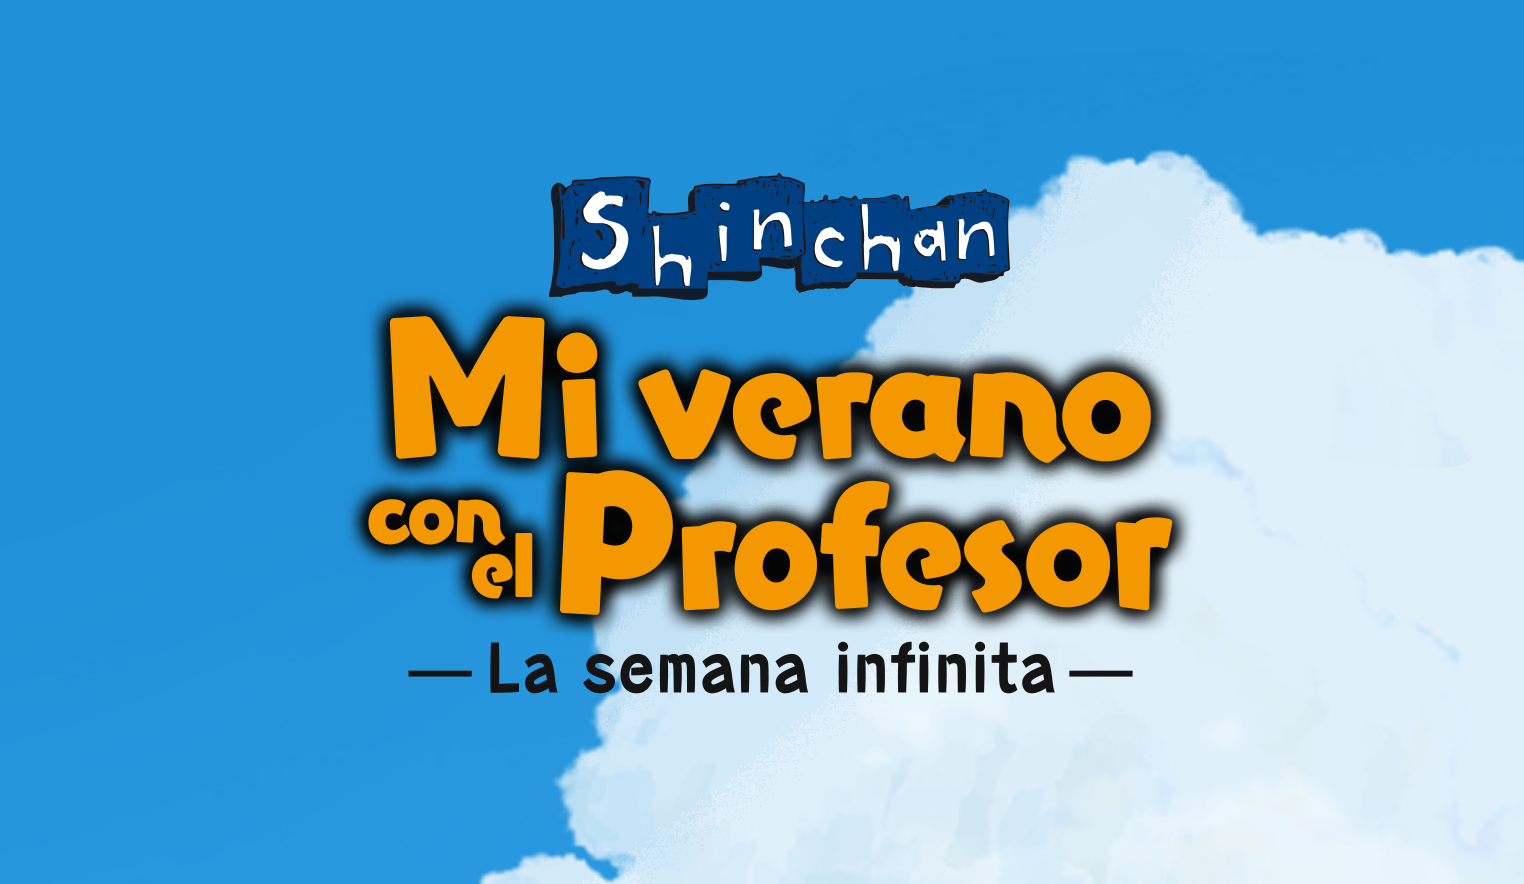 Shin Chan: Mi verano con el Profesor, una bella historia original que honra el manga y anime